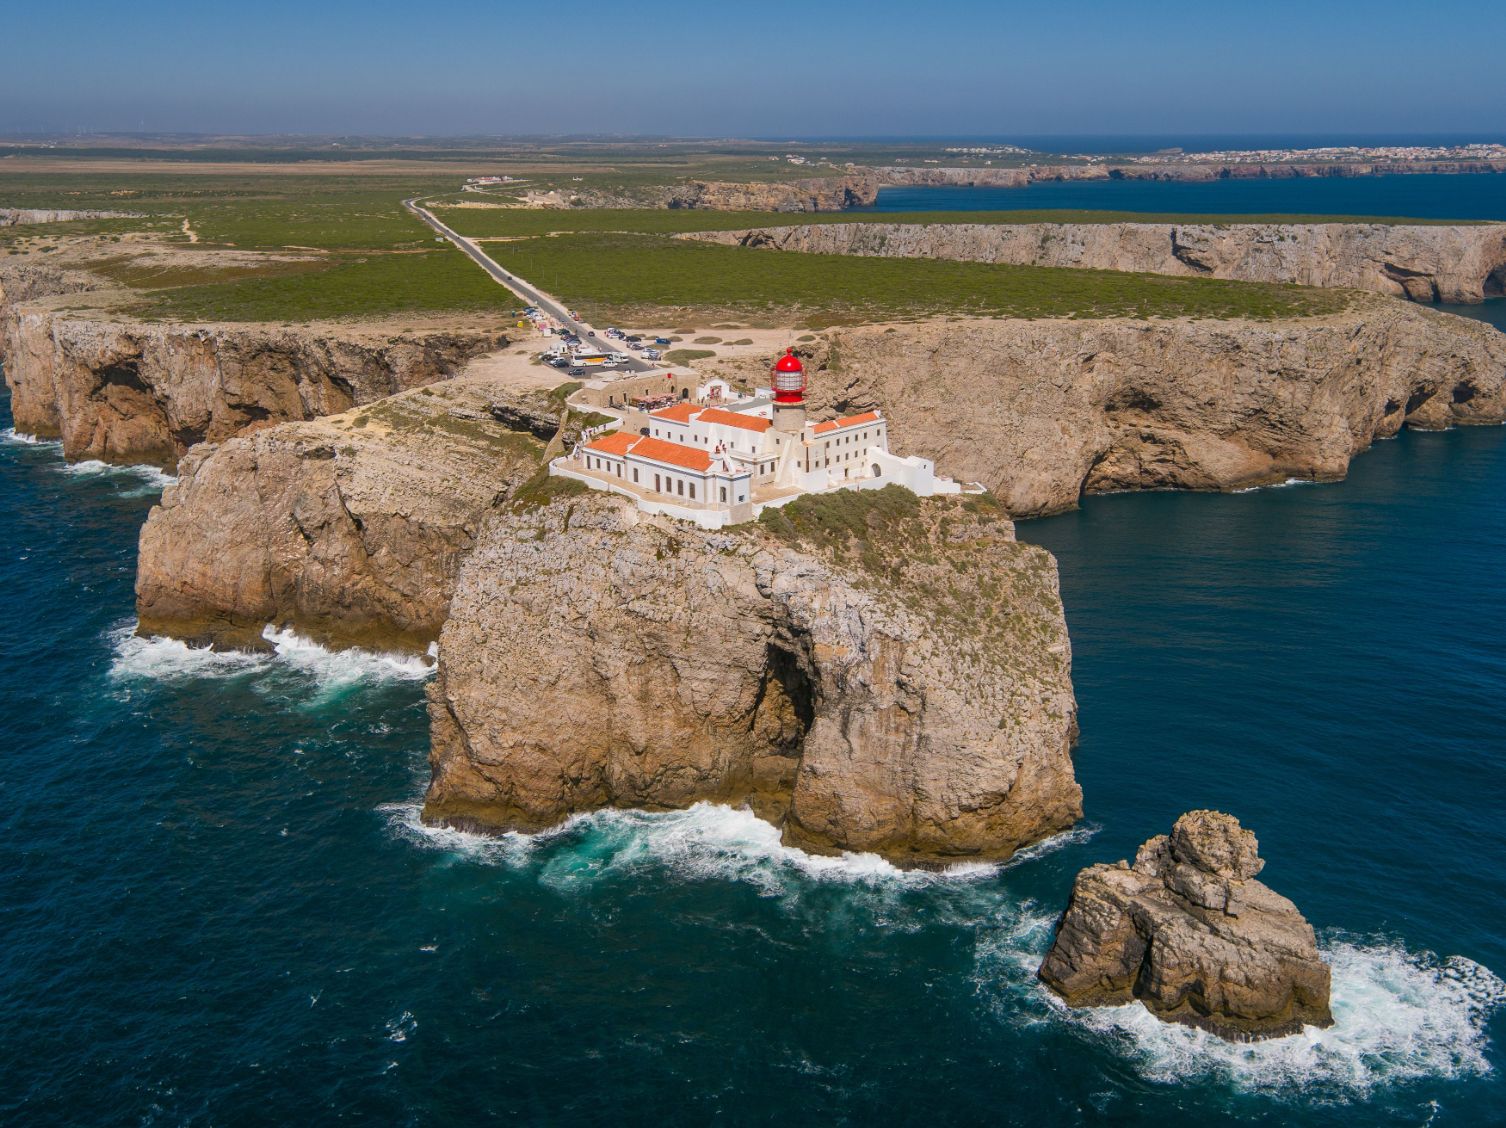 Turismo do Algarve reforça aposta em mercados que contribuam para o desenvolvimento sustentado da região